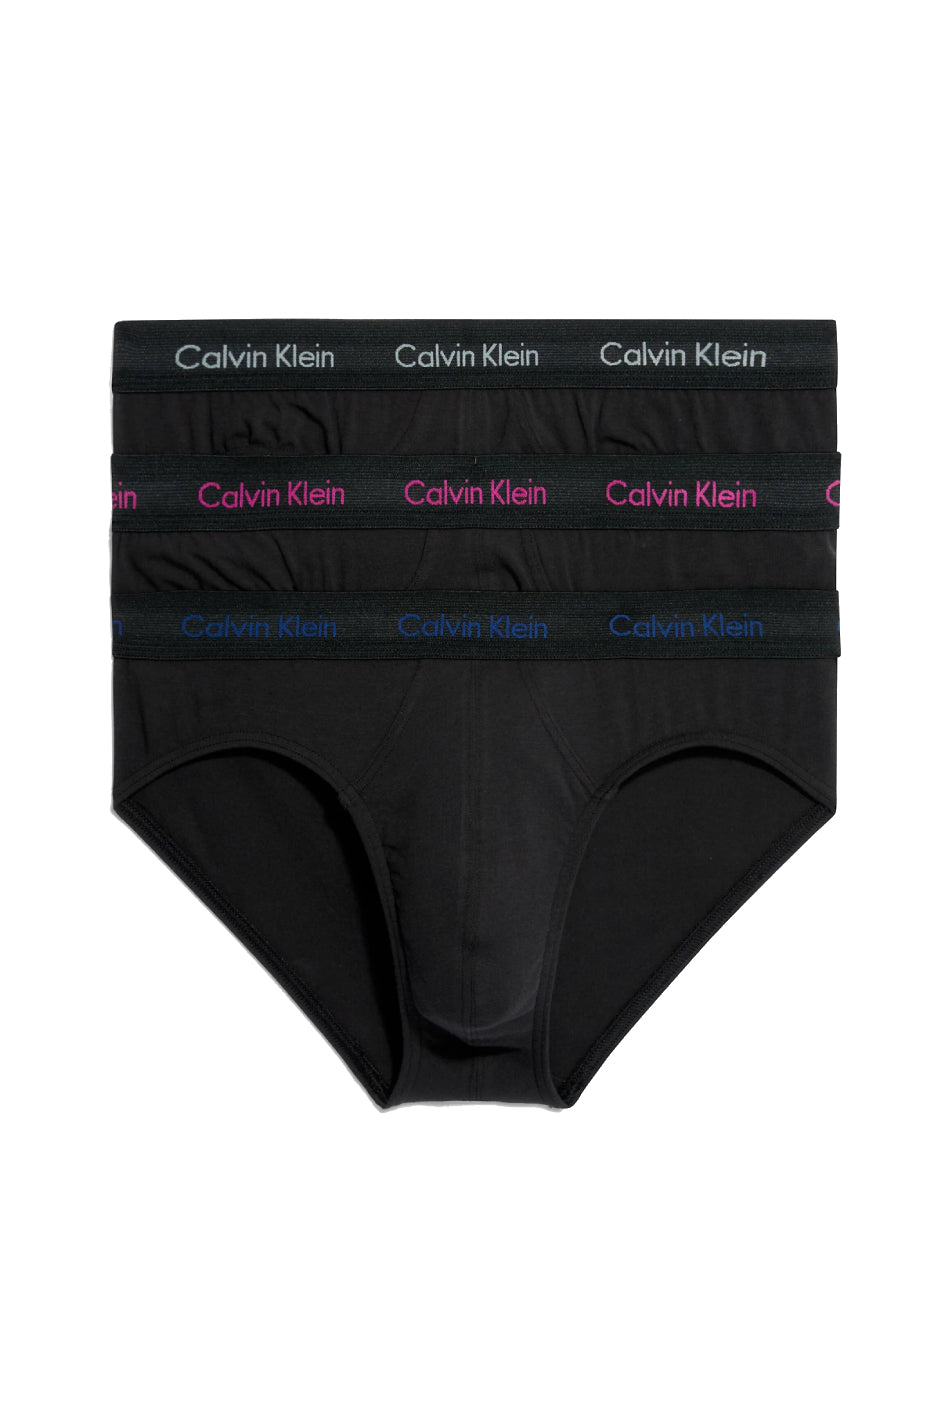 Calvin Klein Cotton Stretch 3 Pack Men's Hip Brief